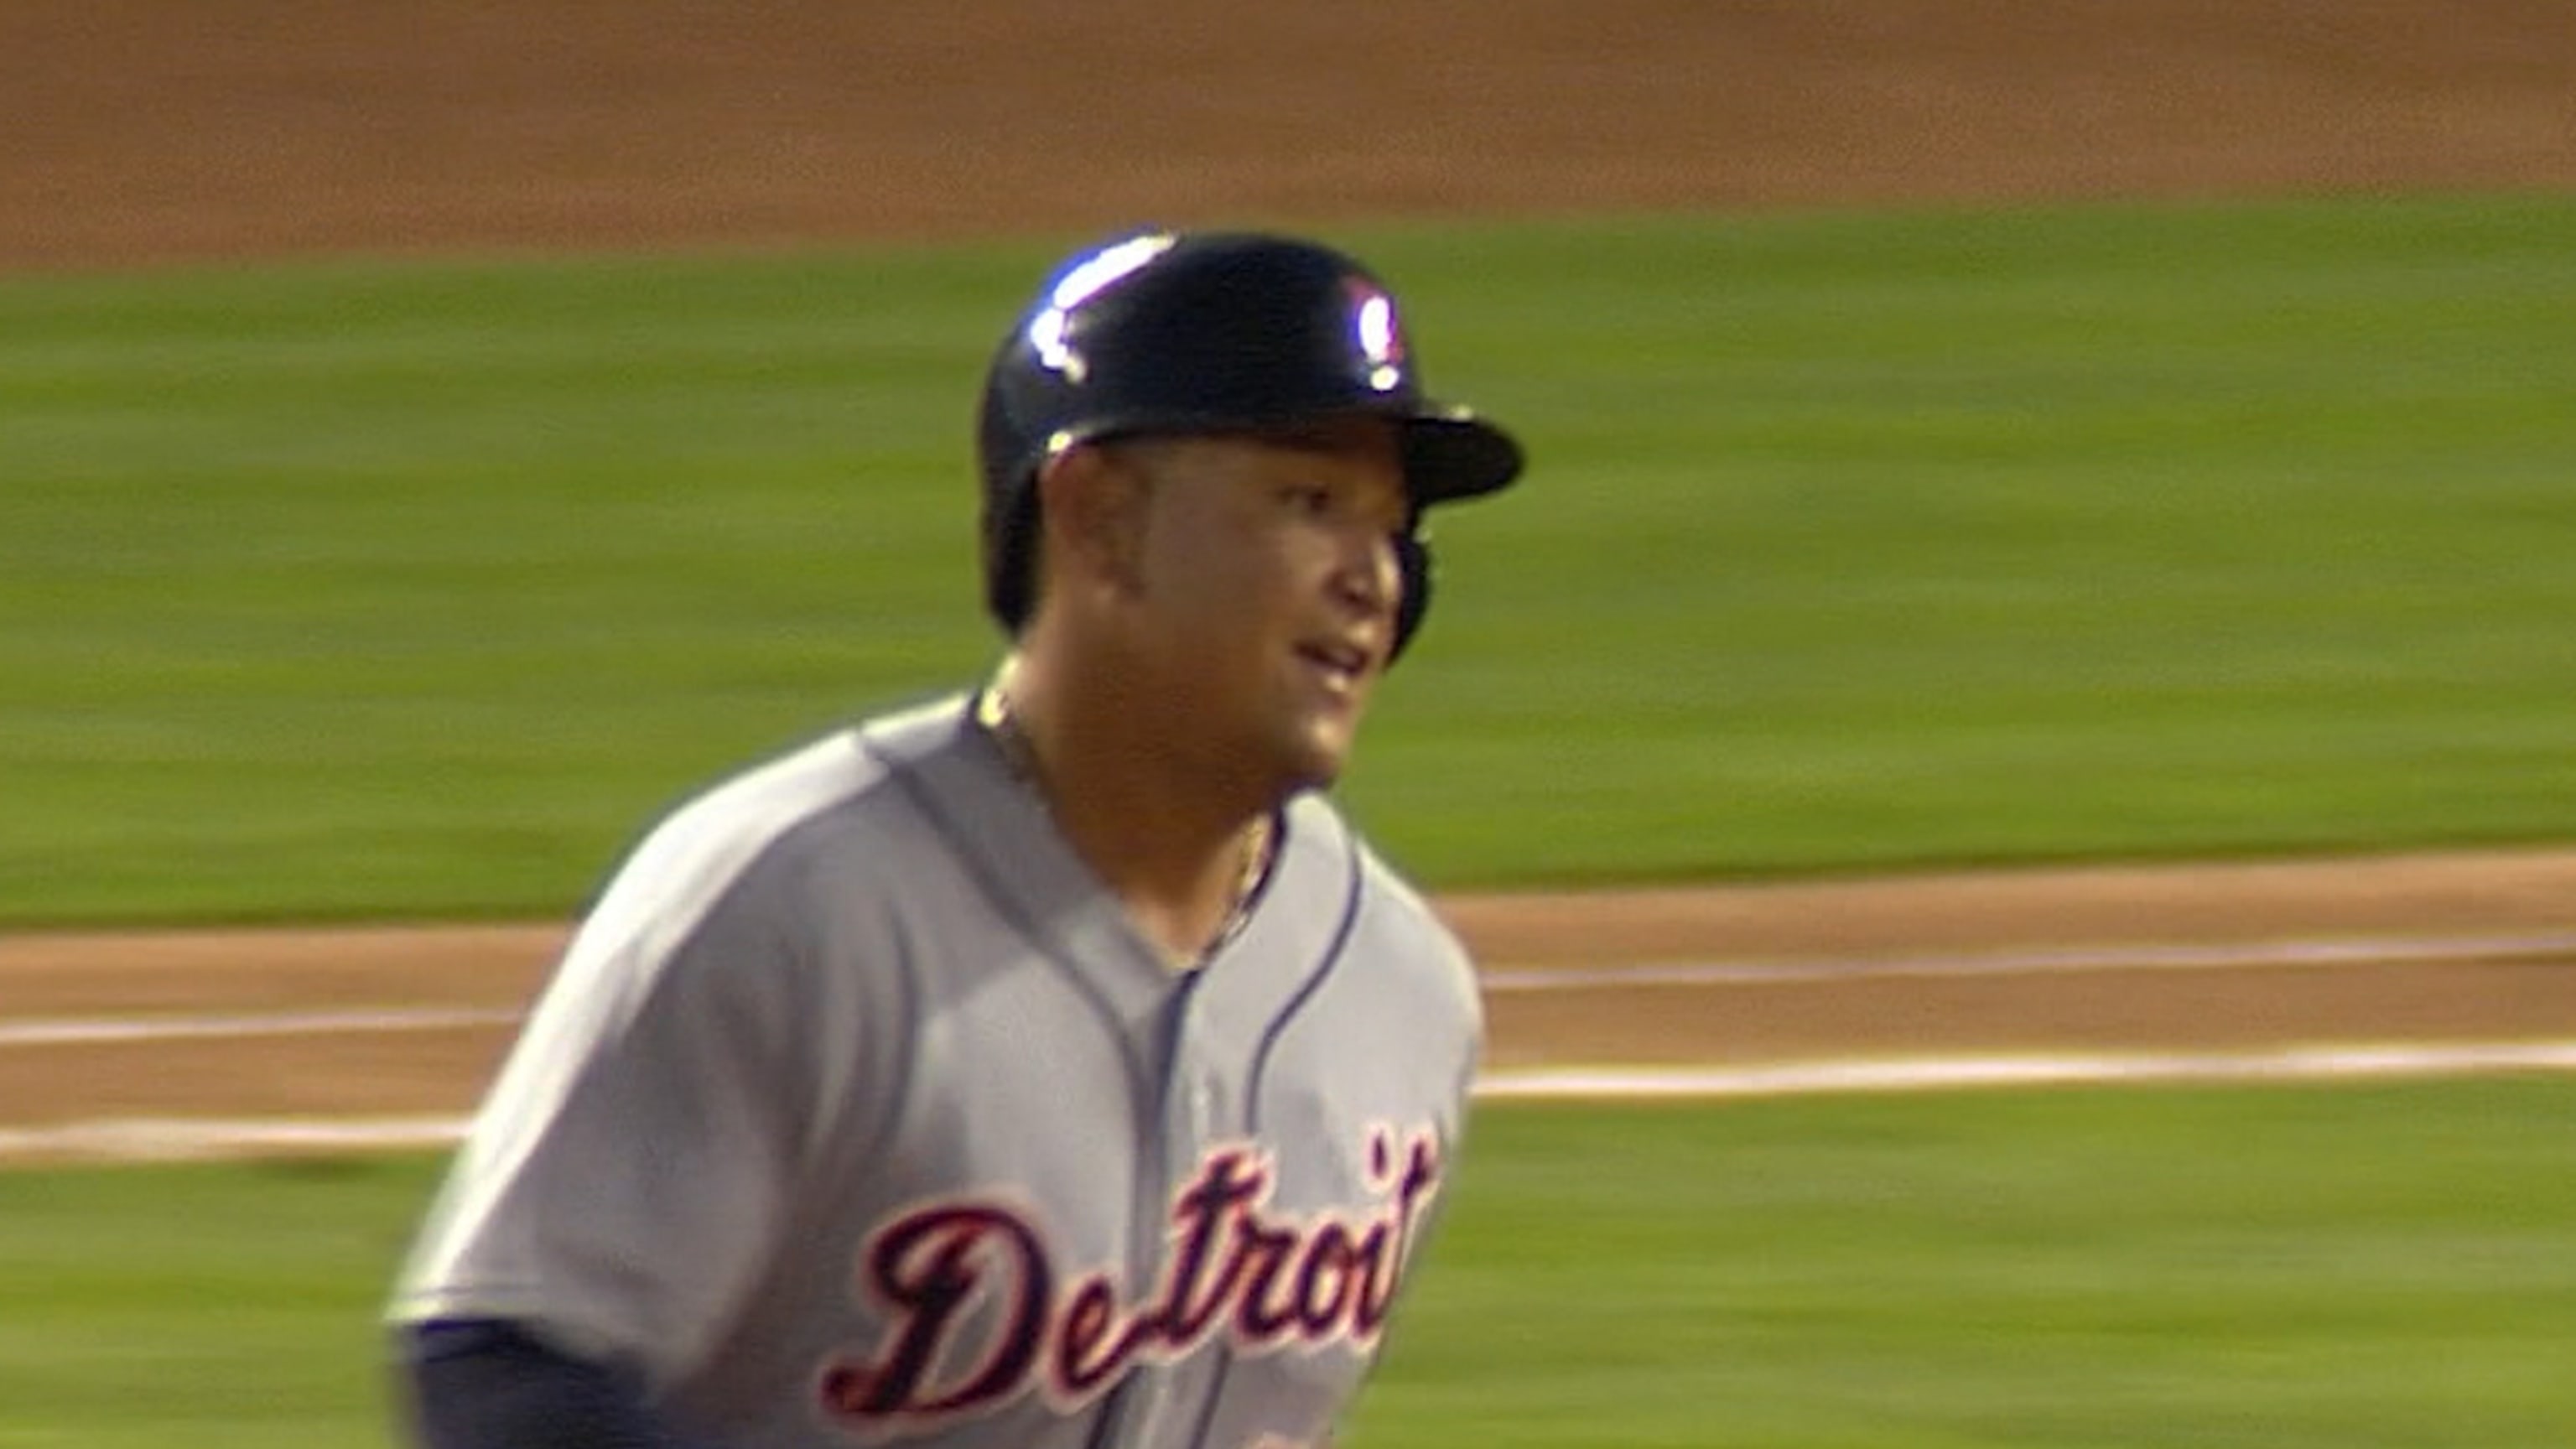 Miguel Cabrera's second home run